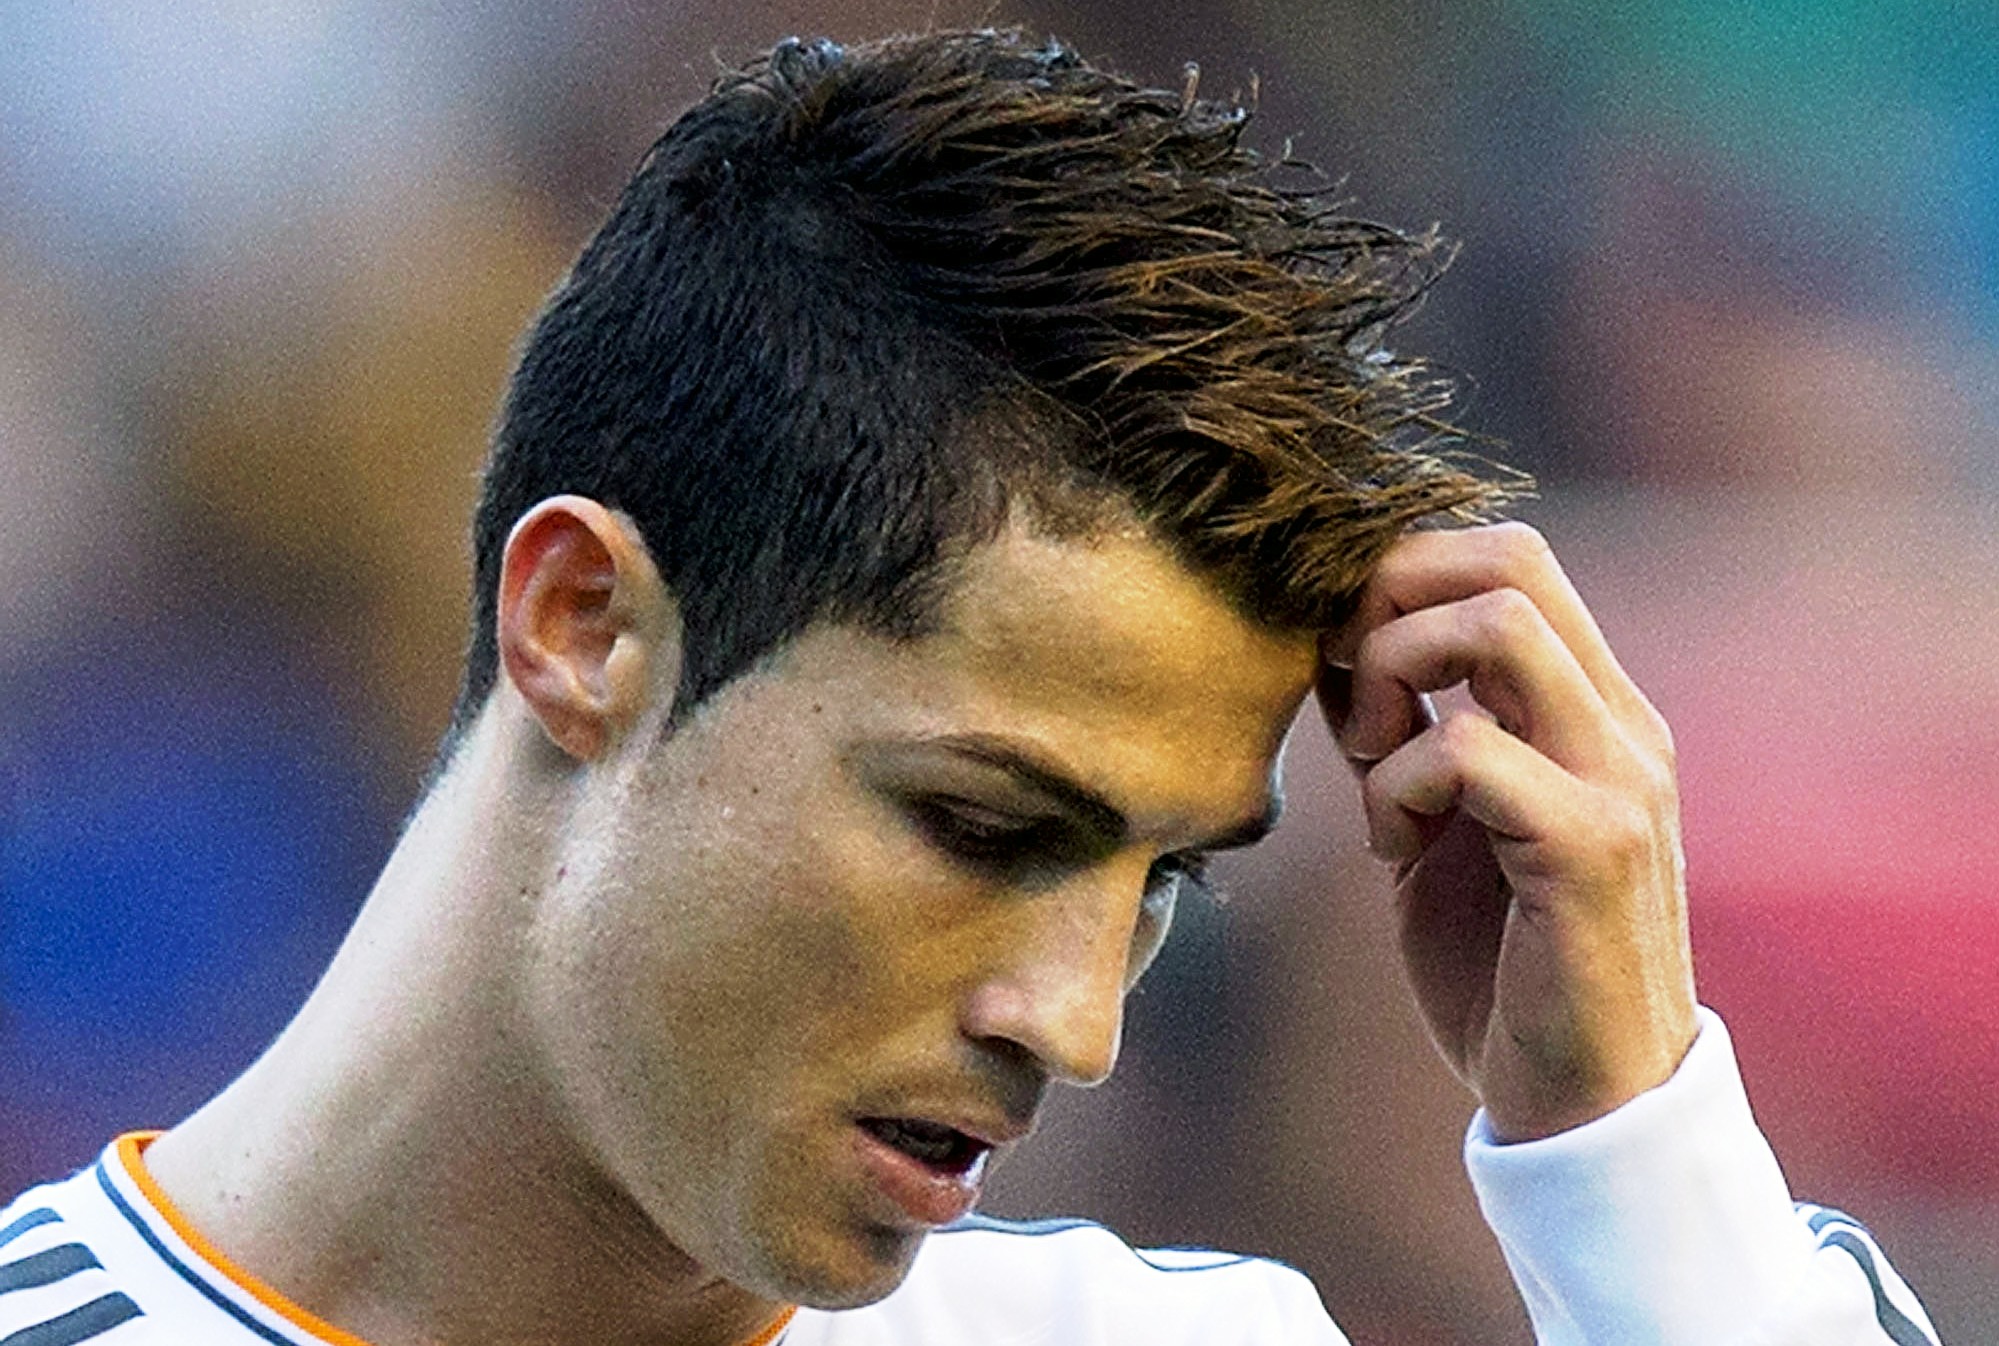 Rambut Cristiano Ronaldo 2013